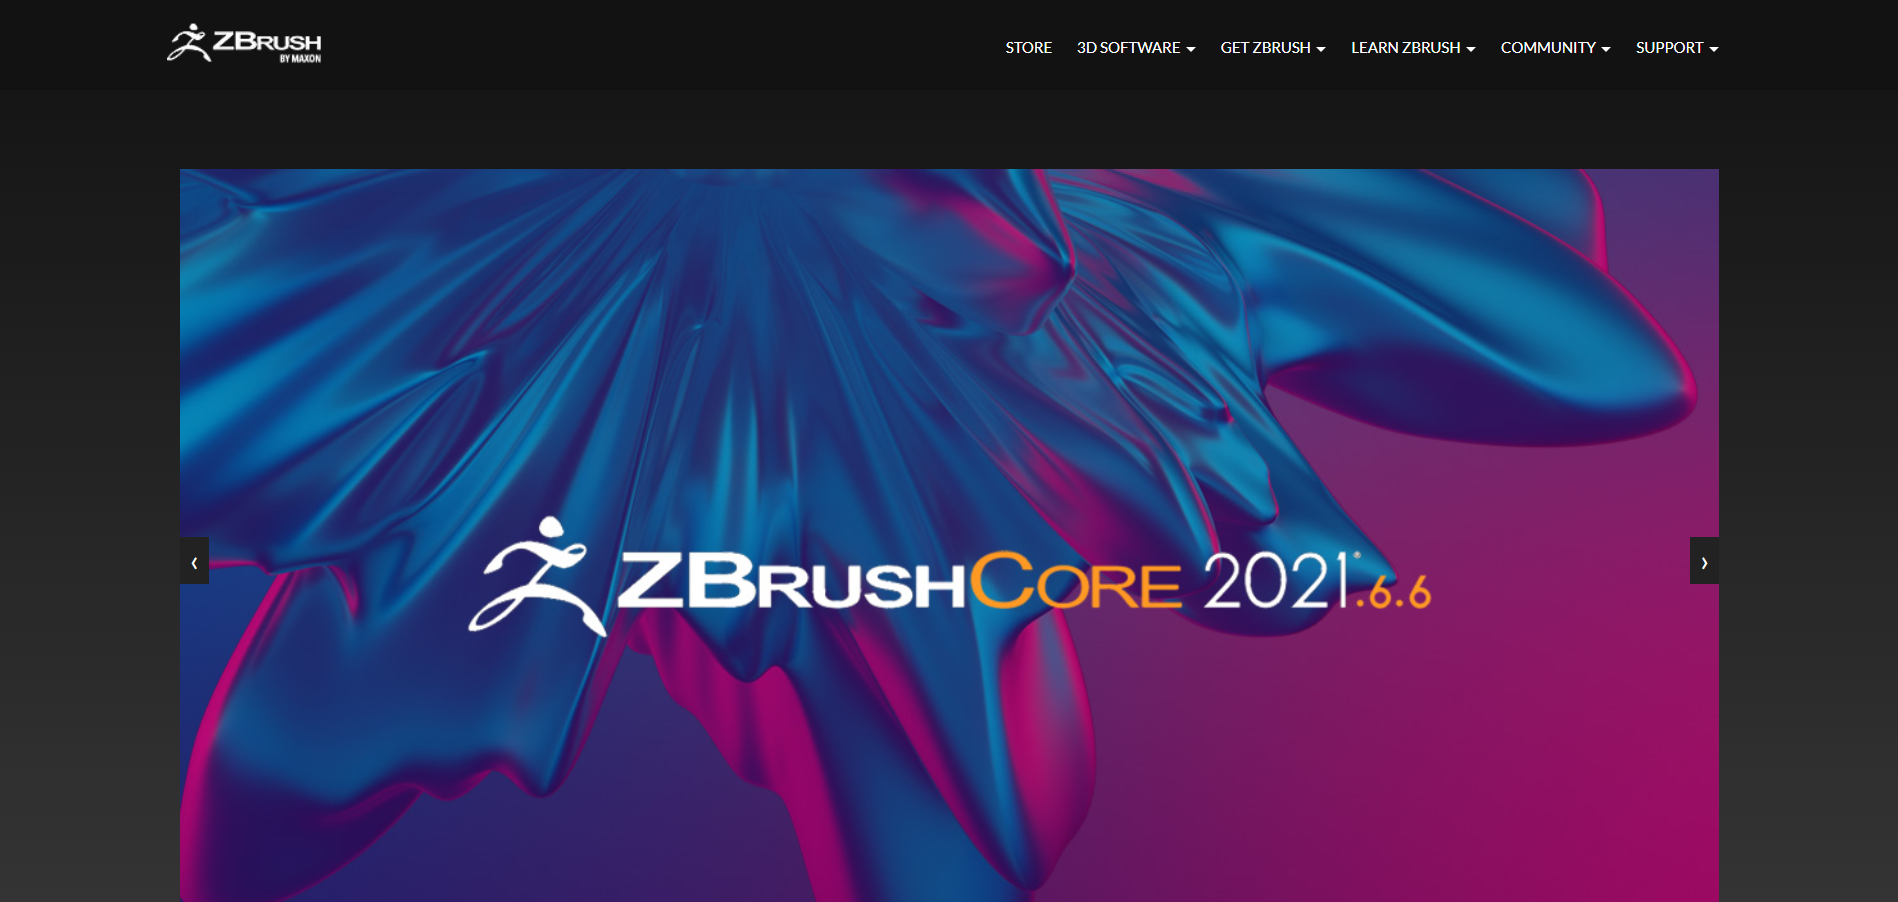 ZBrush Main Page